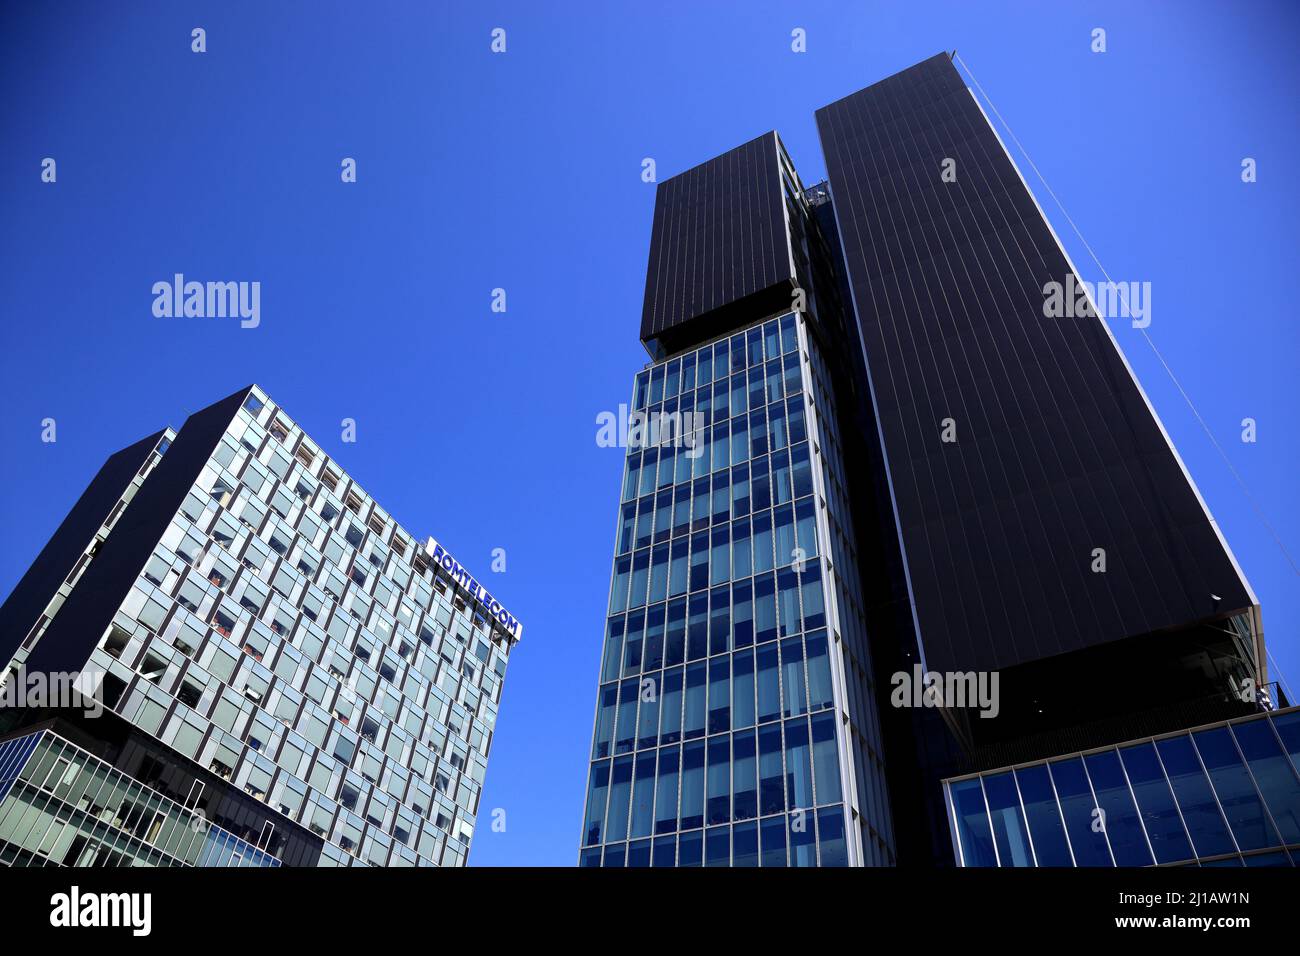 City Gate Towers, Turnurile Portile Orasului, sind zwei Klasse-A-Bürogebäude in Bukarest, Rumänien / City Gate Towers, Turnurile Portile Orasului, A Stockfoto